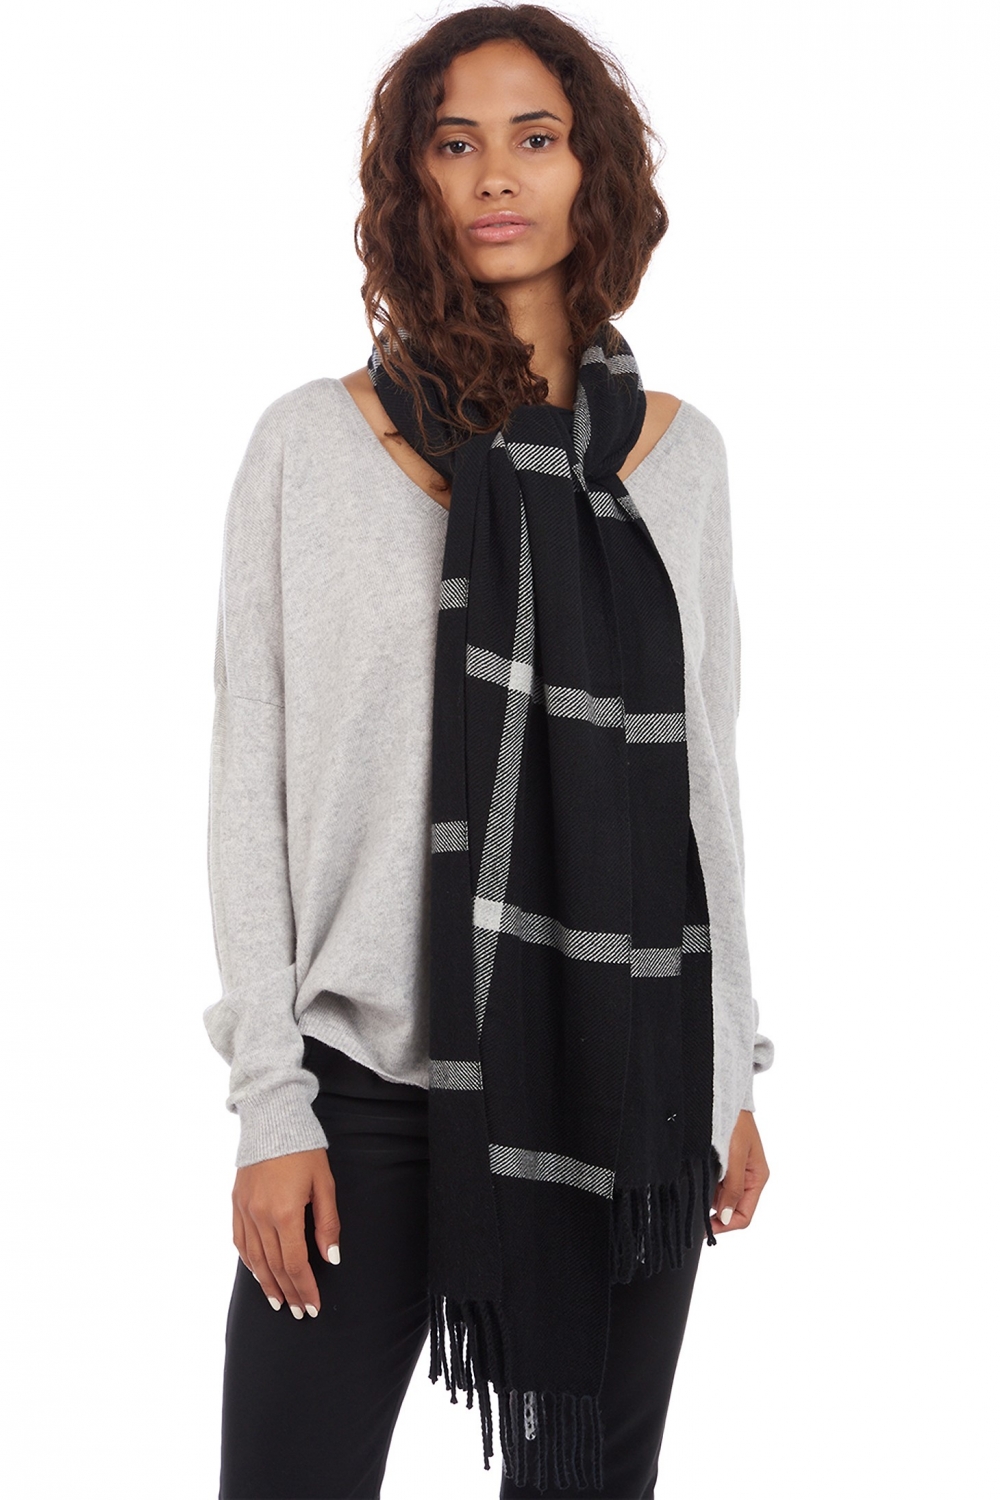 Kasjmier accessoires sjaals amsterdam zwart flanel grijs gemeleerd 50 x 210 cm